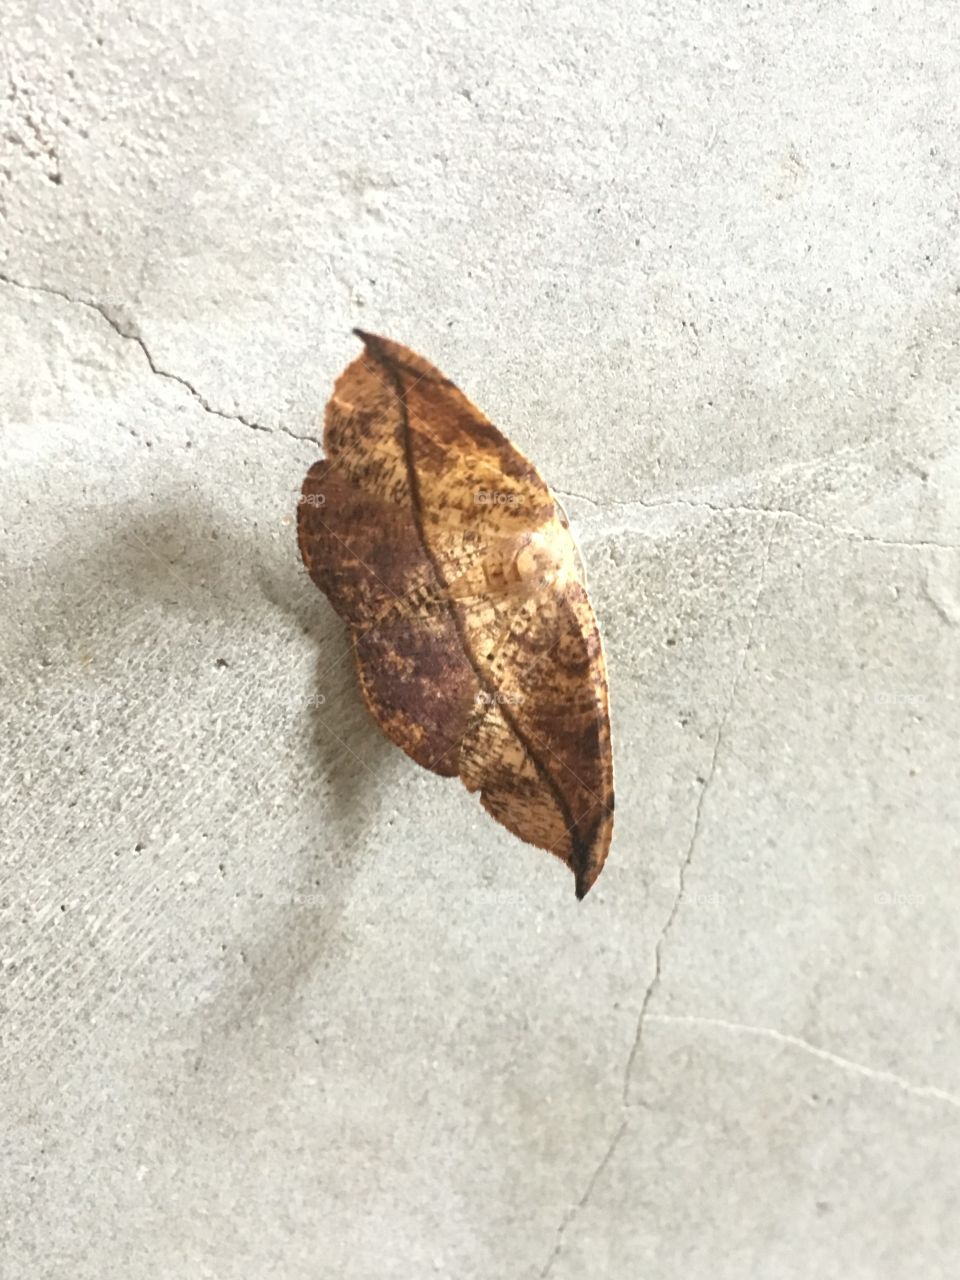 Bicho-folha (a kind of butterfly) leaf bug